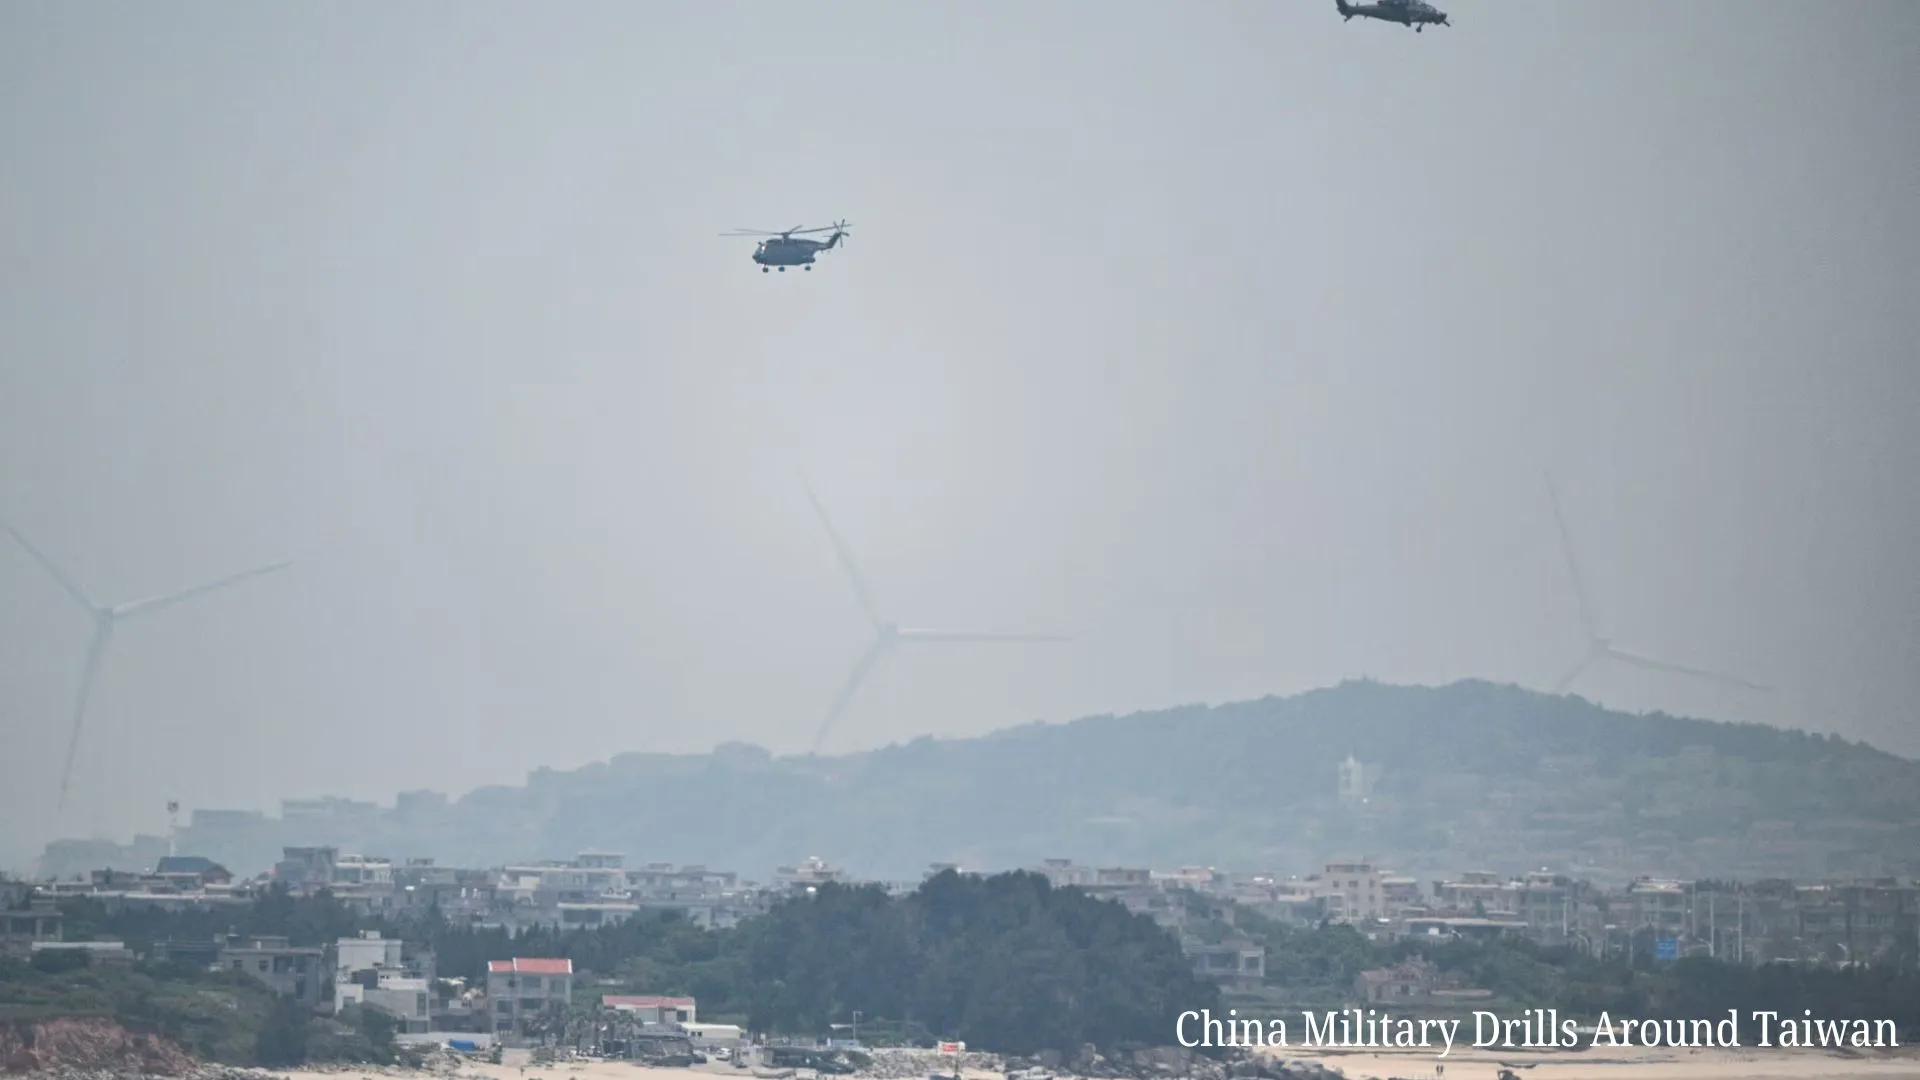 China Military Drills Around Taiwan